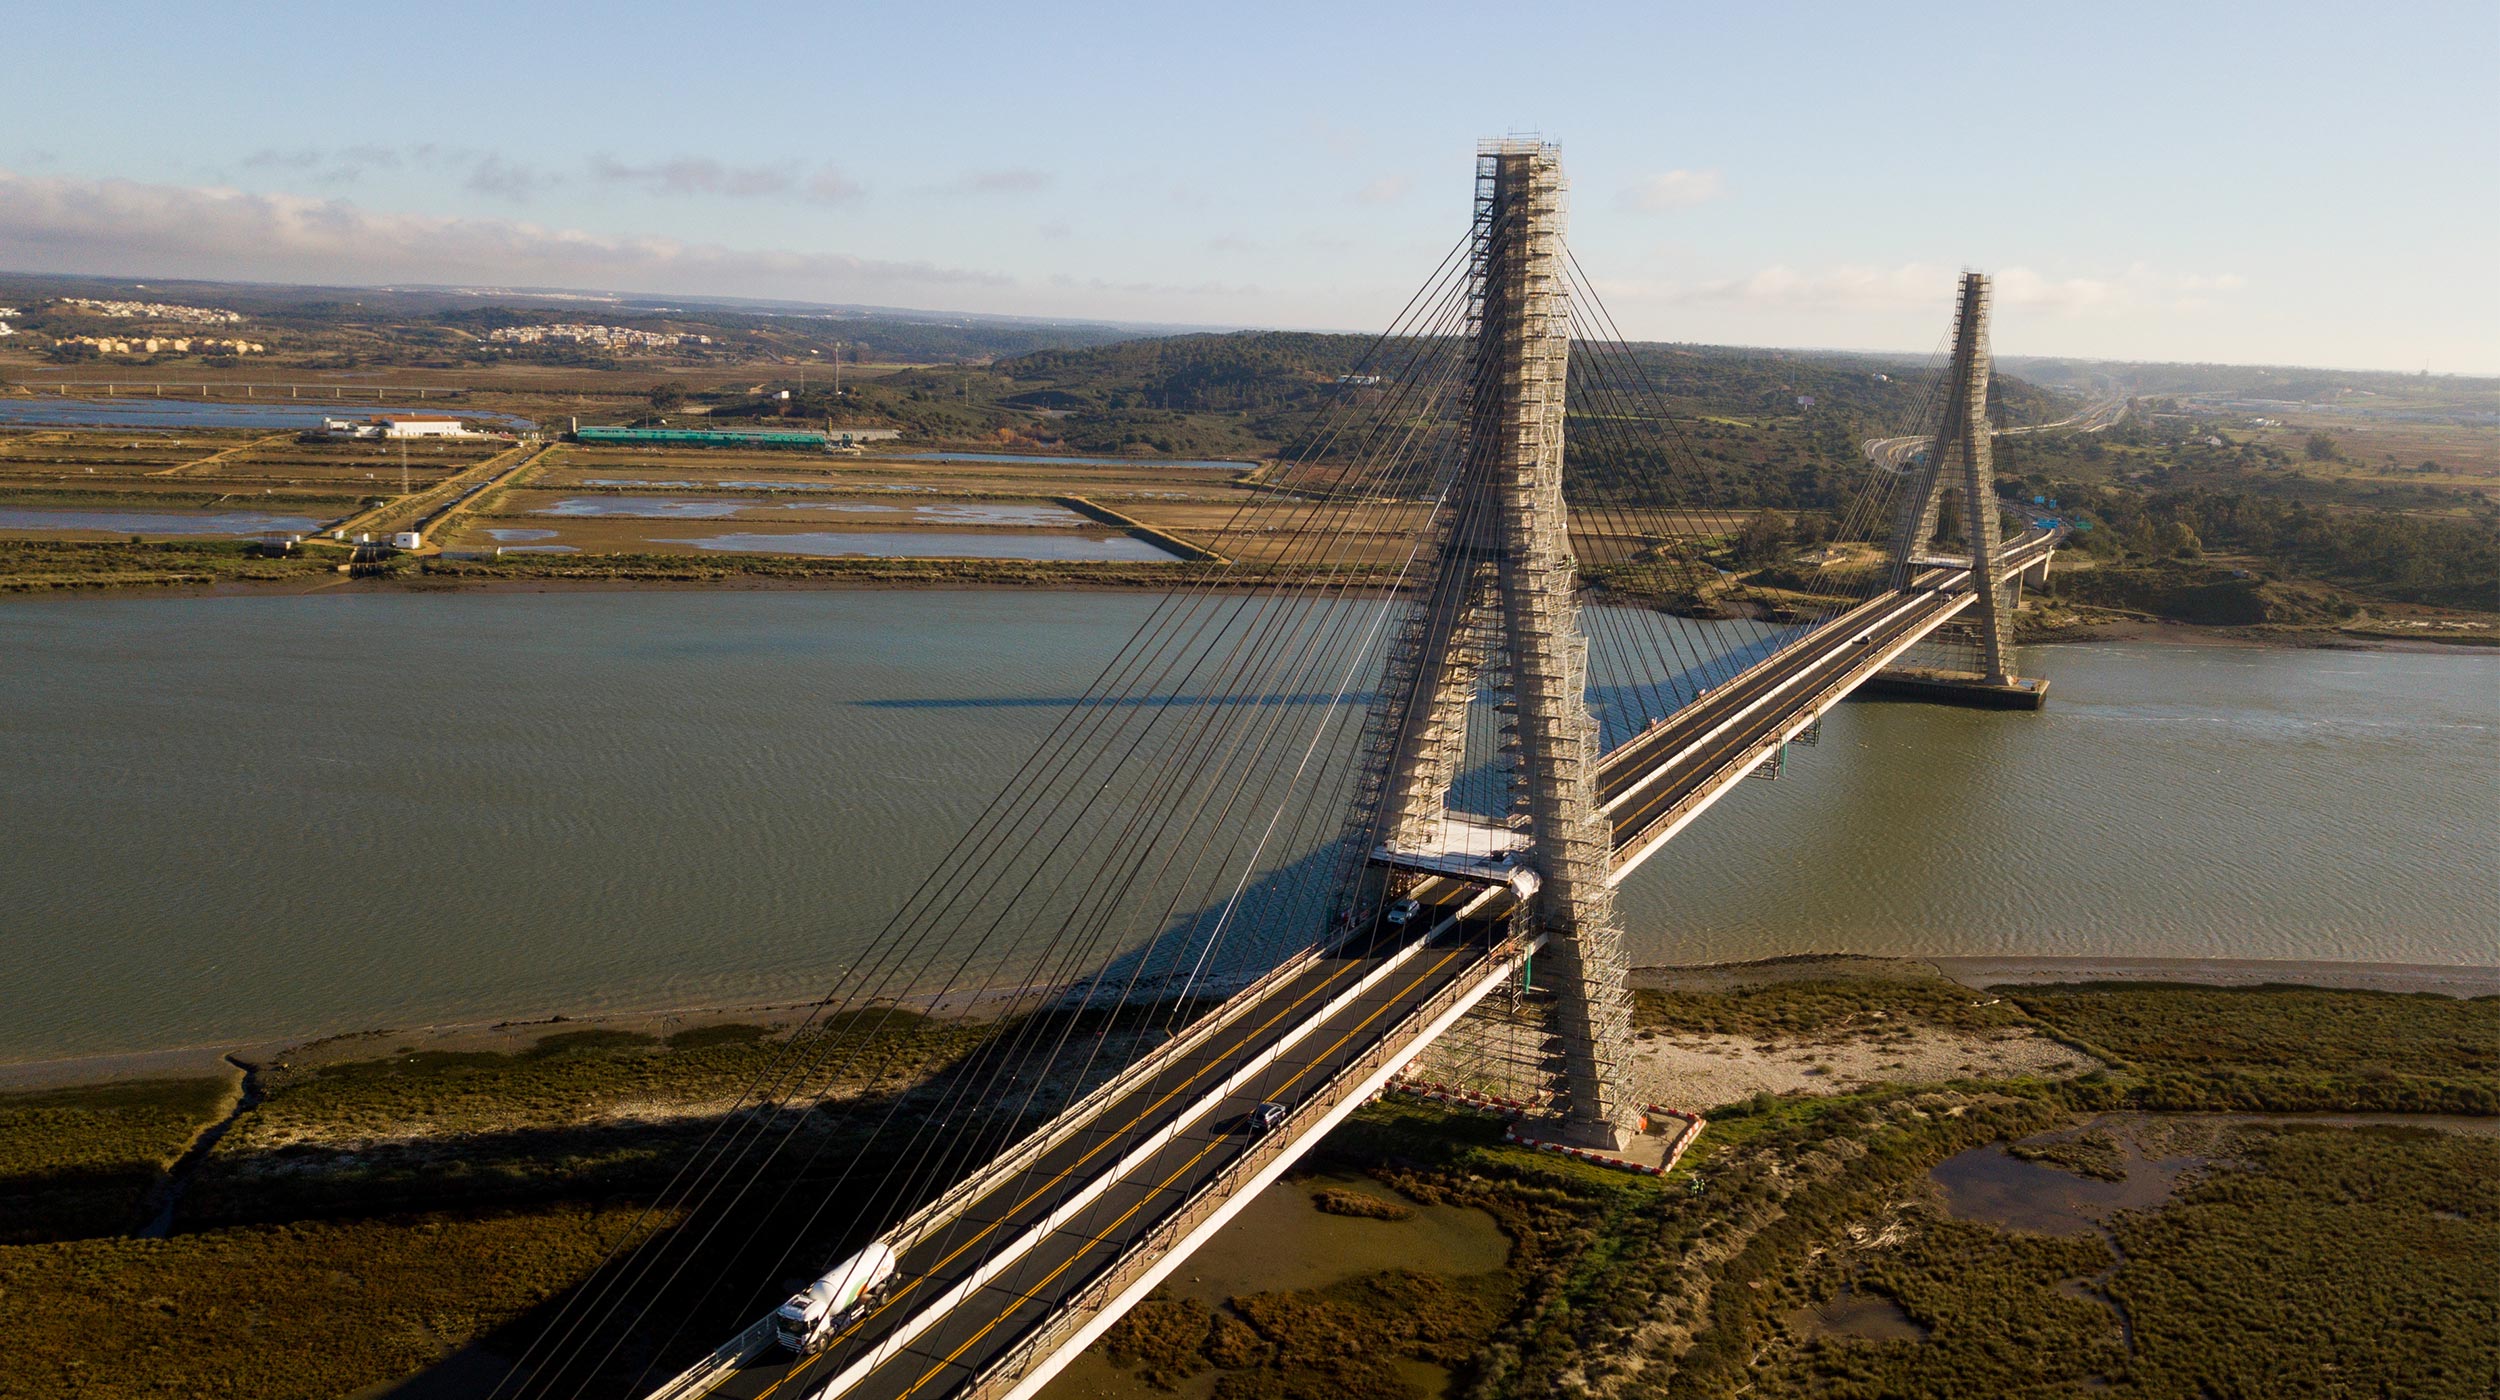 El Puente Internacional sobre el río Guadiana une España y Portugal. Es una construcción de 666 metros, divididos en cinco vanos, y realizada por el ingeniero José Luis Cancio Martins, en hormigón armado y acero.